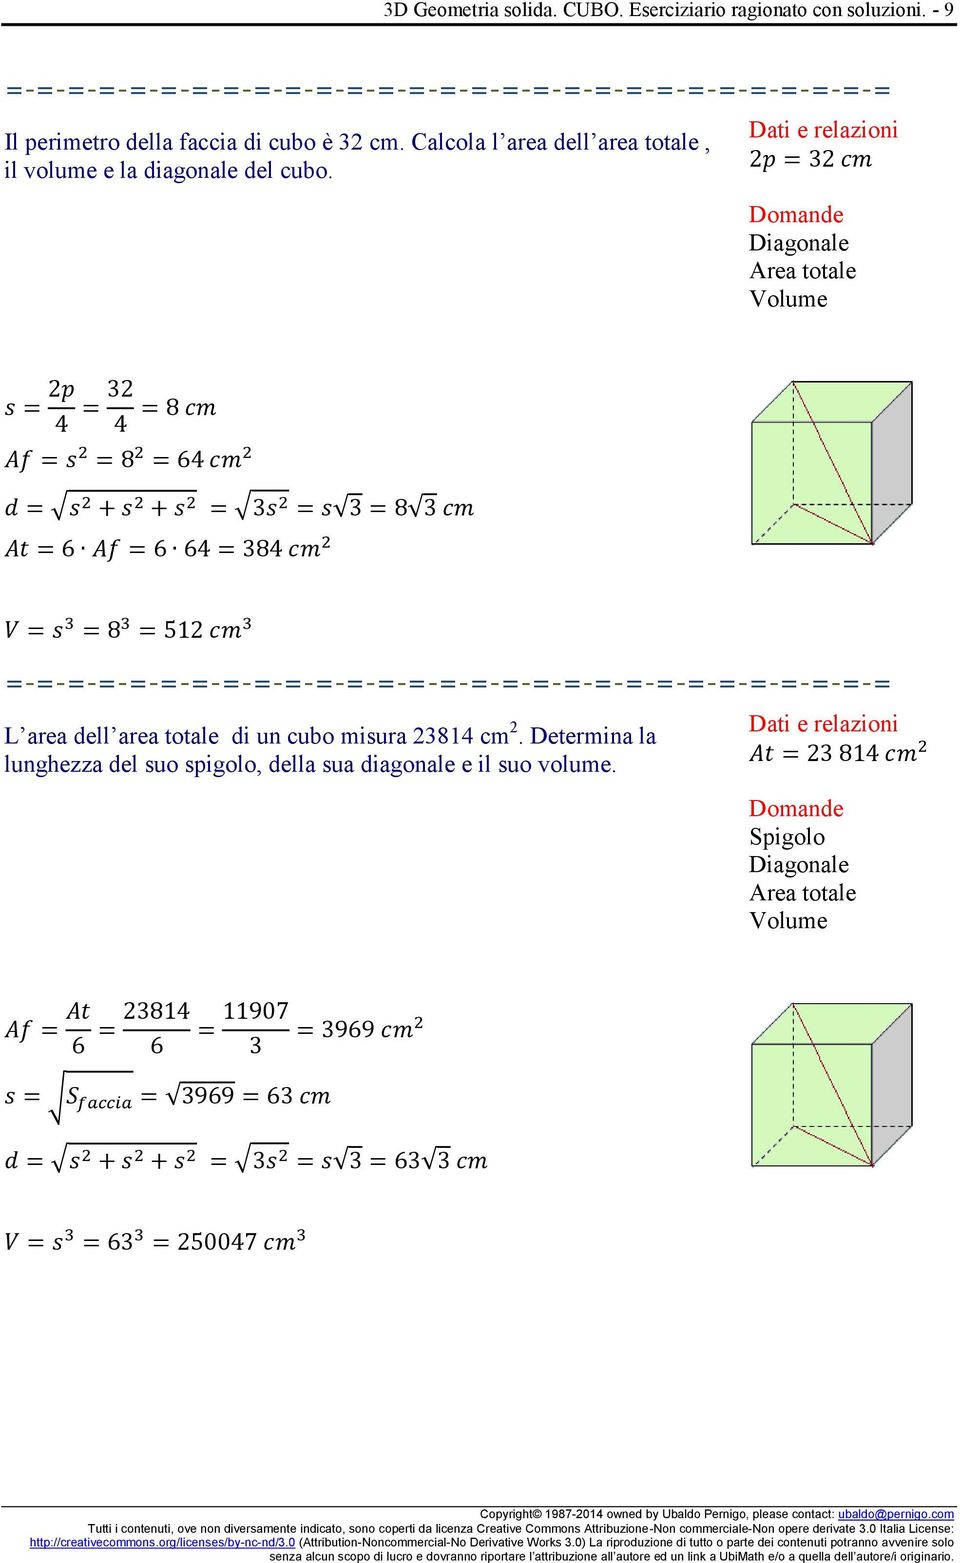 Calcola l area dell area totale, il volume e la diagonale del cubo.